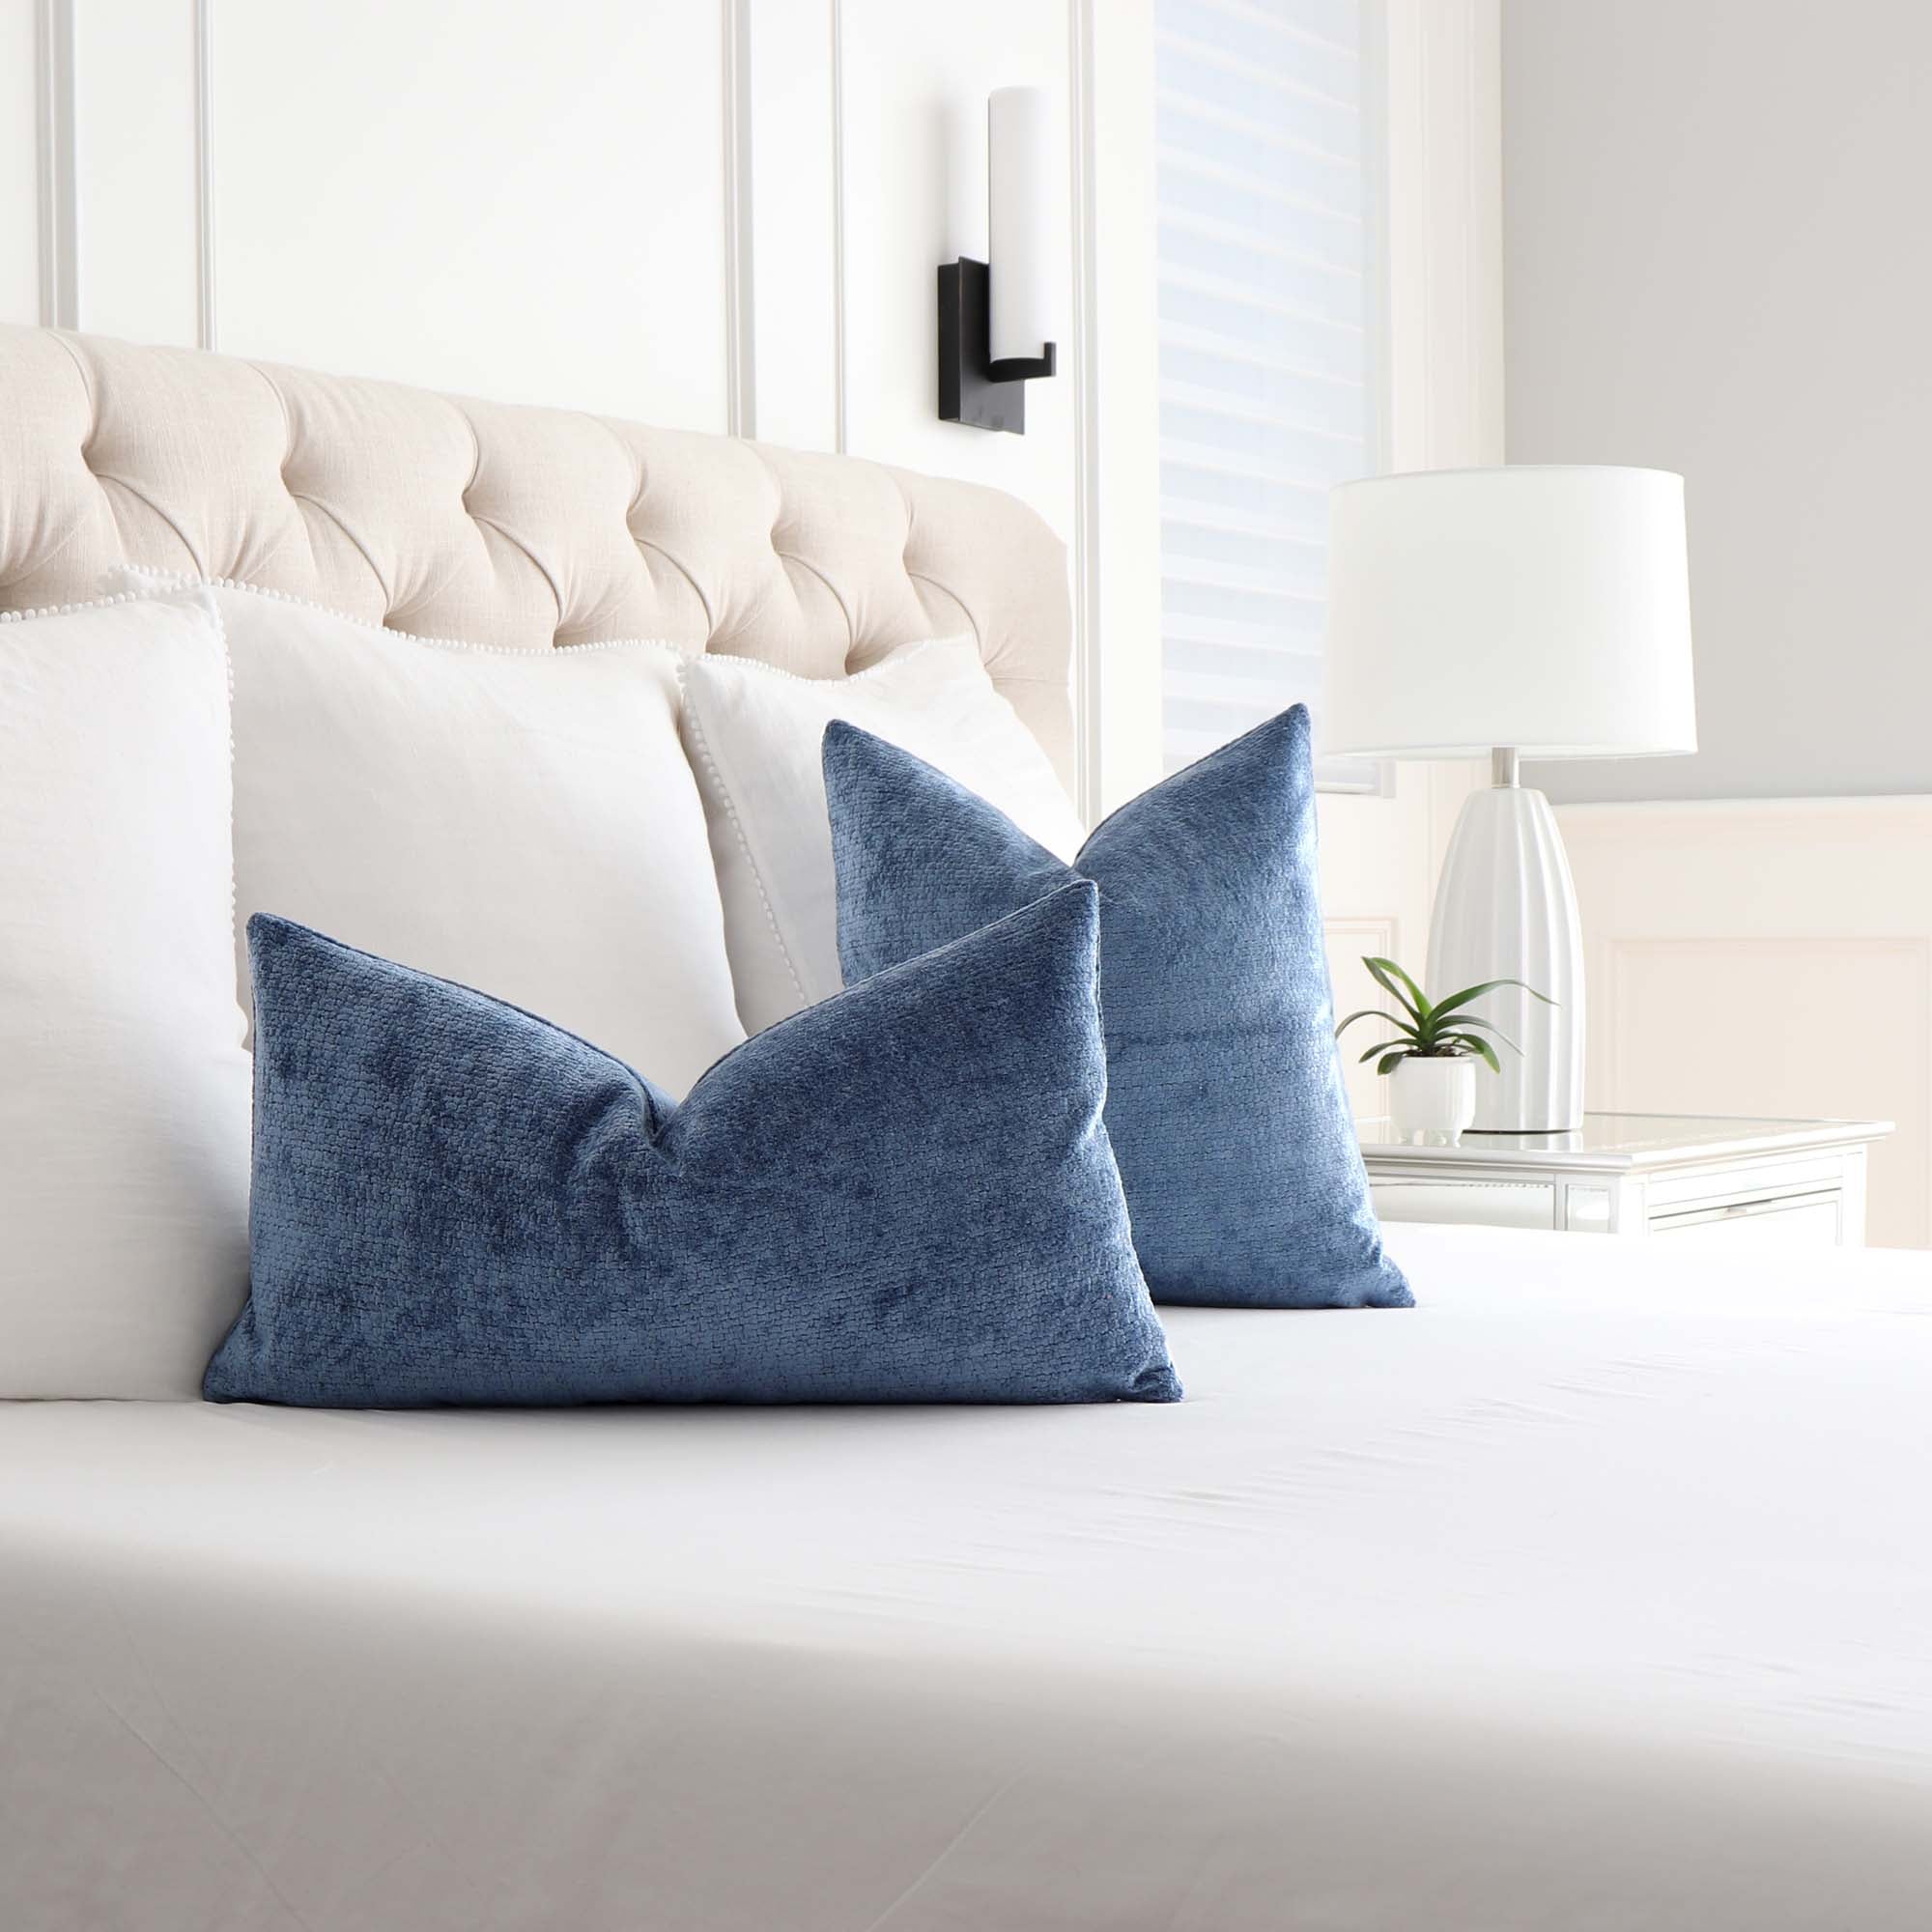 Kelly Wearstler Rebus Blue Textured Velvet Designer Luxury Throw Pillow Cover in Bedroom